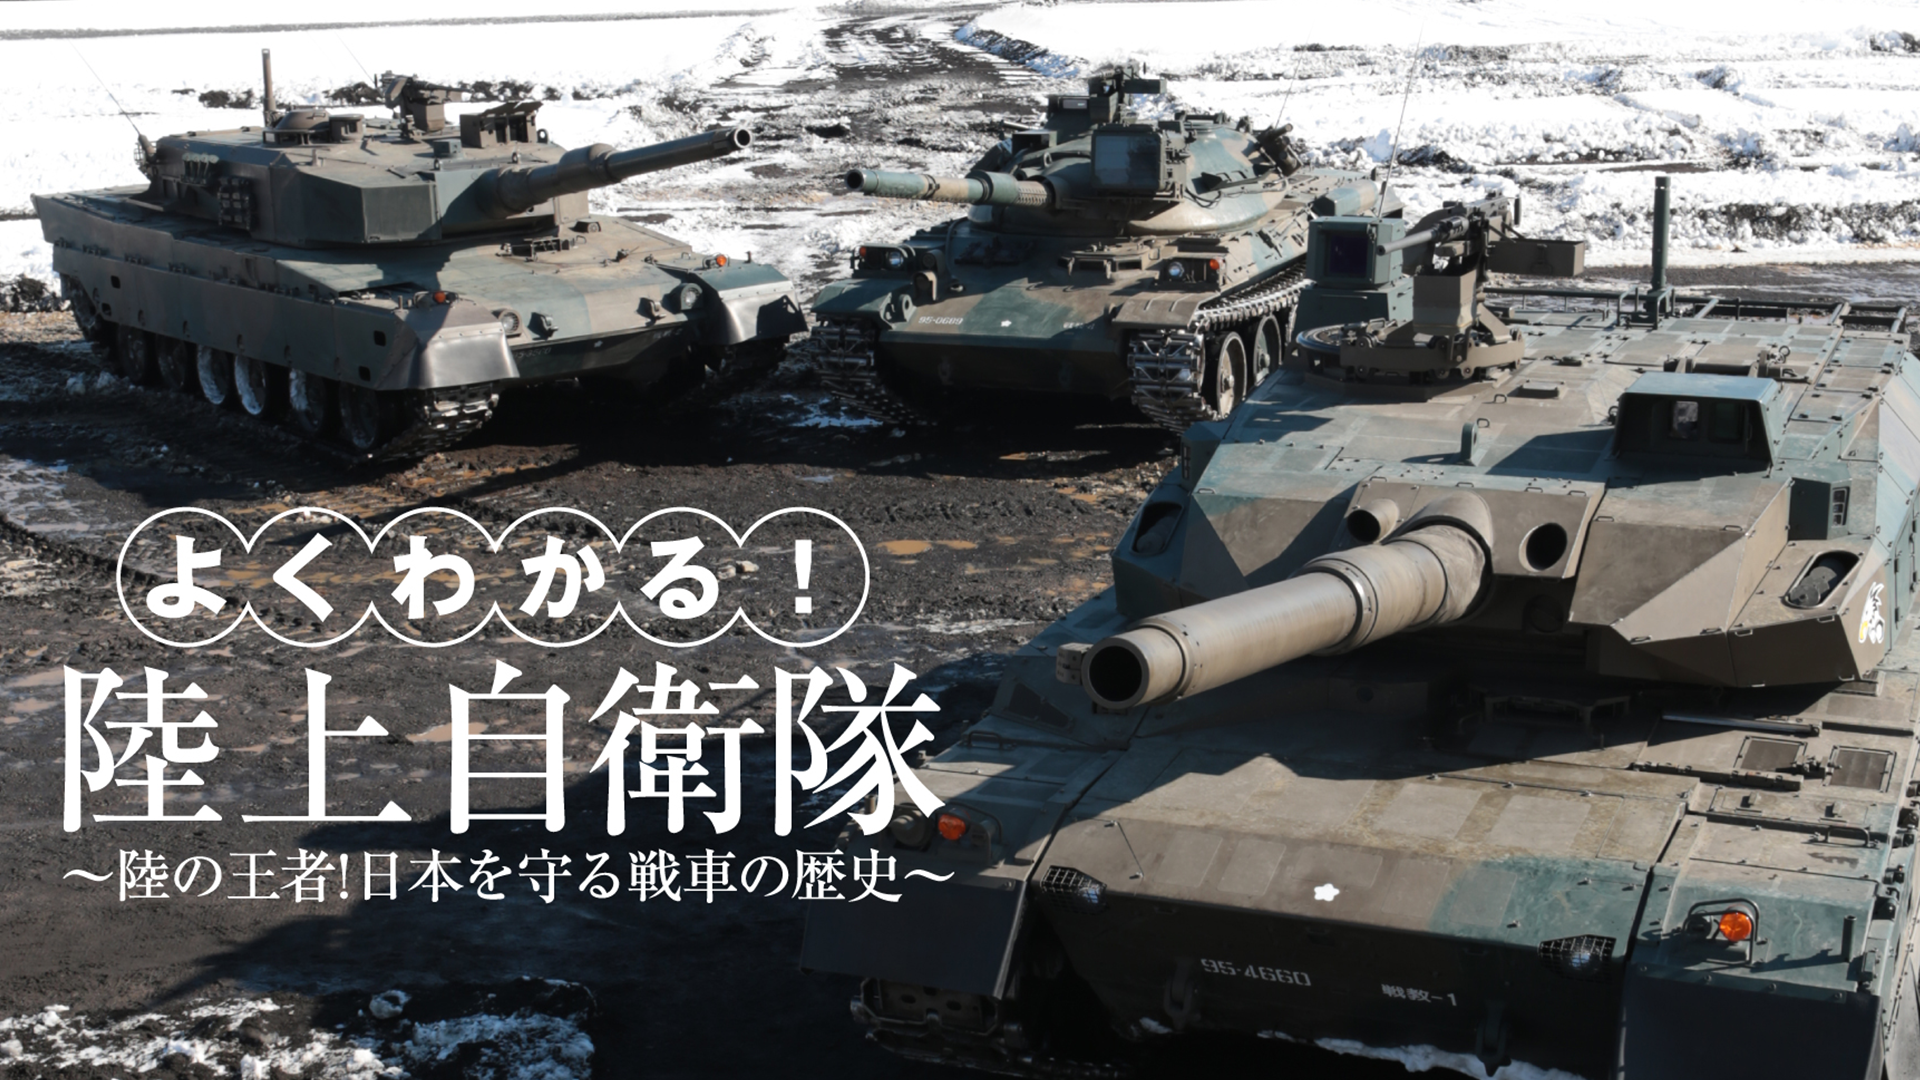 よくわかる!陸上自衛隊~陸の王者!日本を守る戦車の歴史~ [DVD]